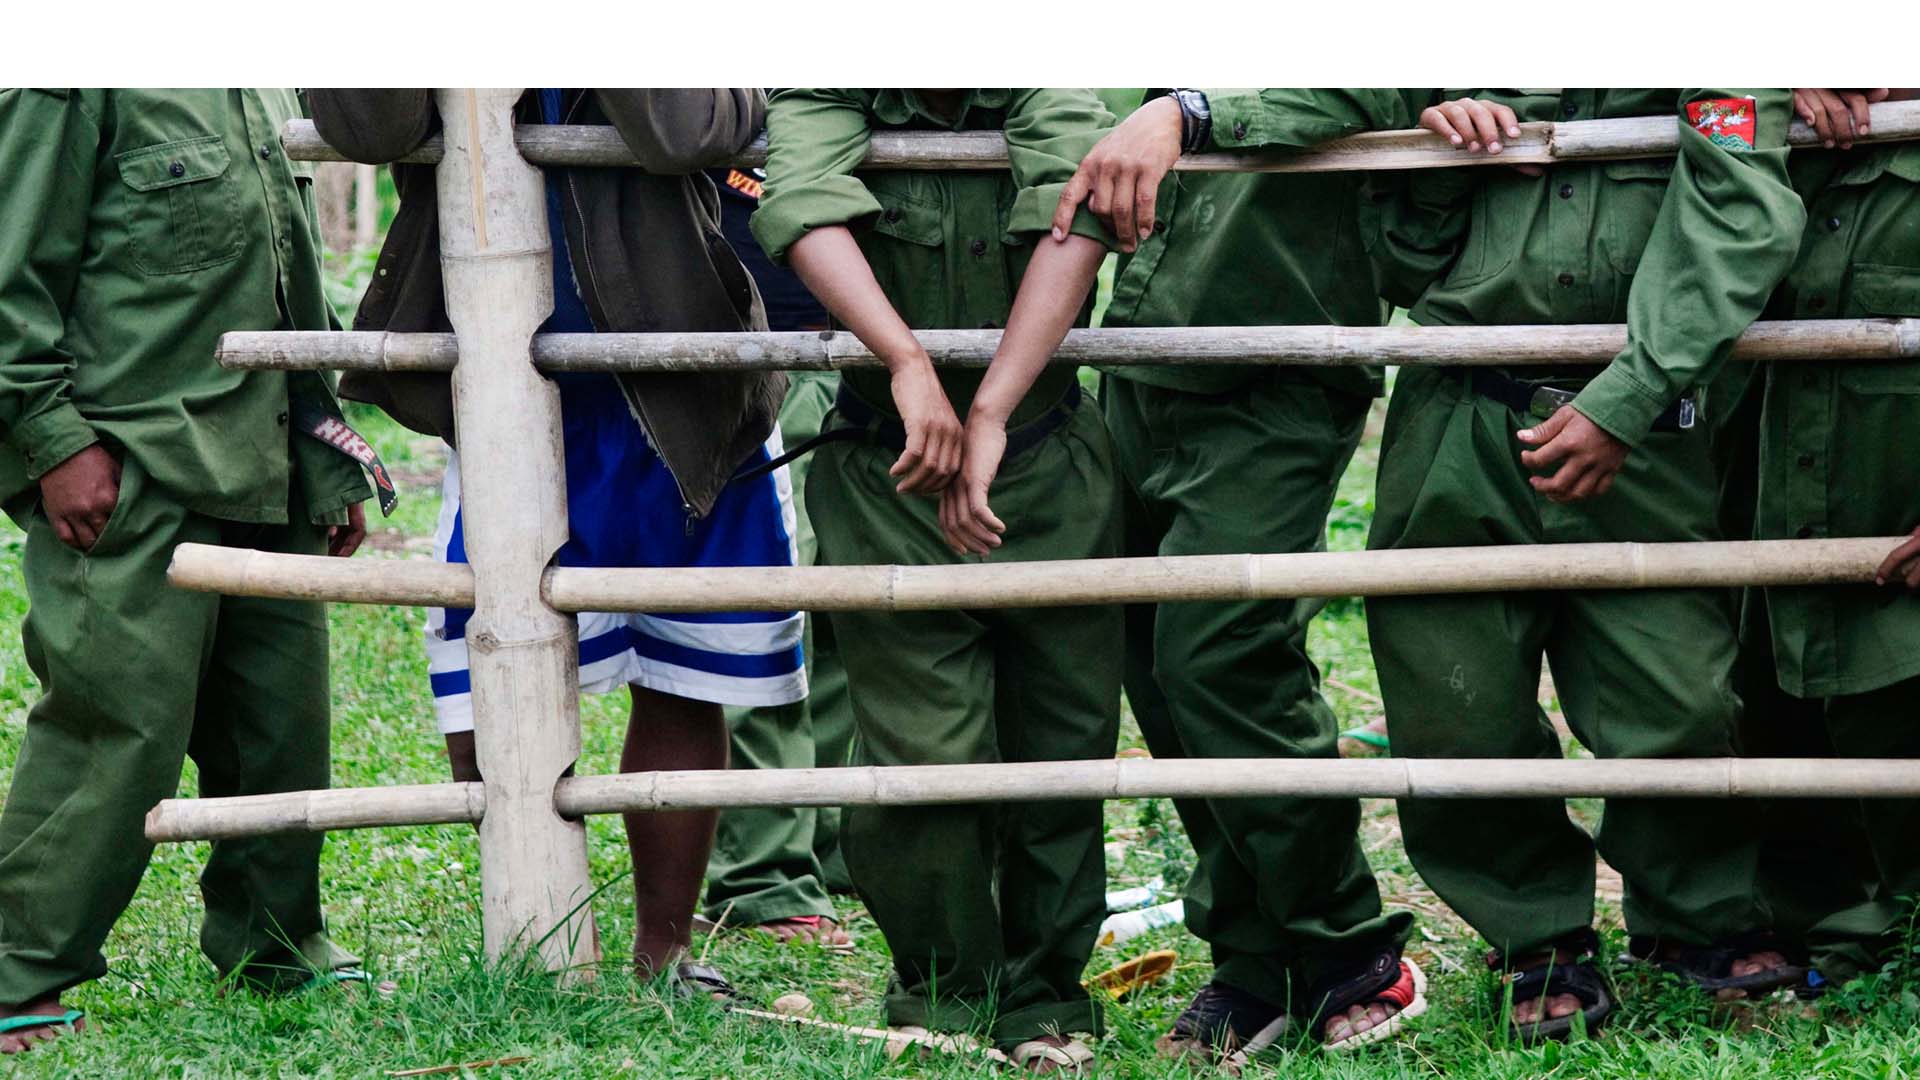 Los niños y adolescentes reclutados serán considerados víctimas del conflicto armado y recibidos por la Unicef para iniciar un proceso de reinserción social